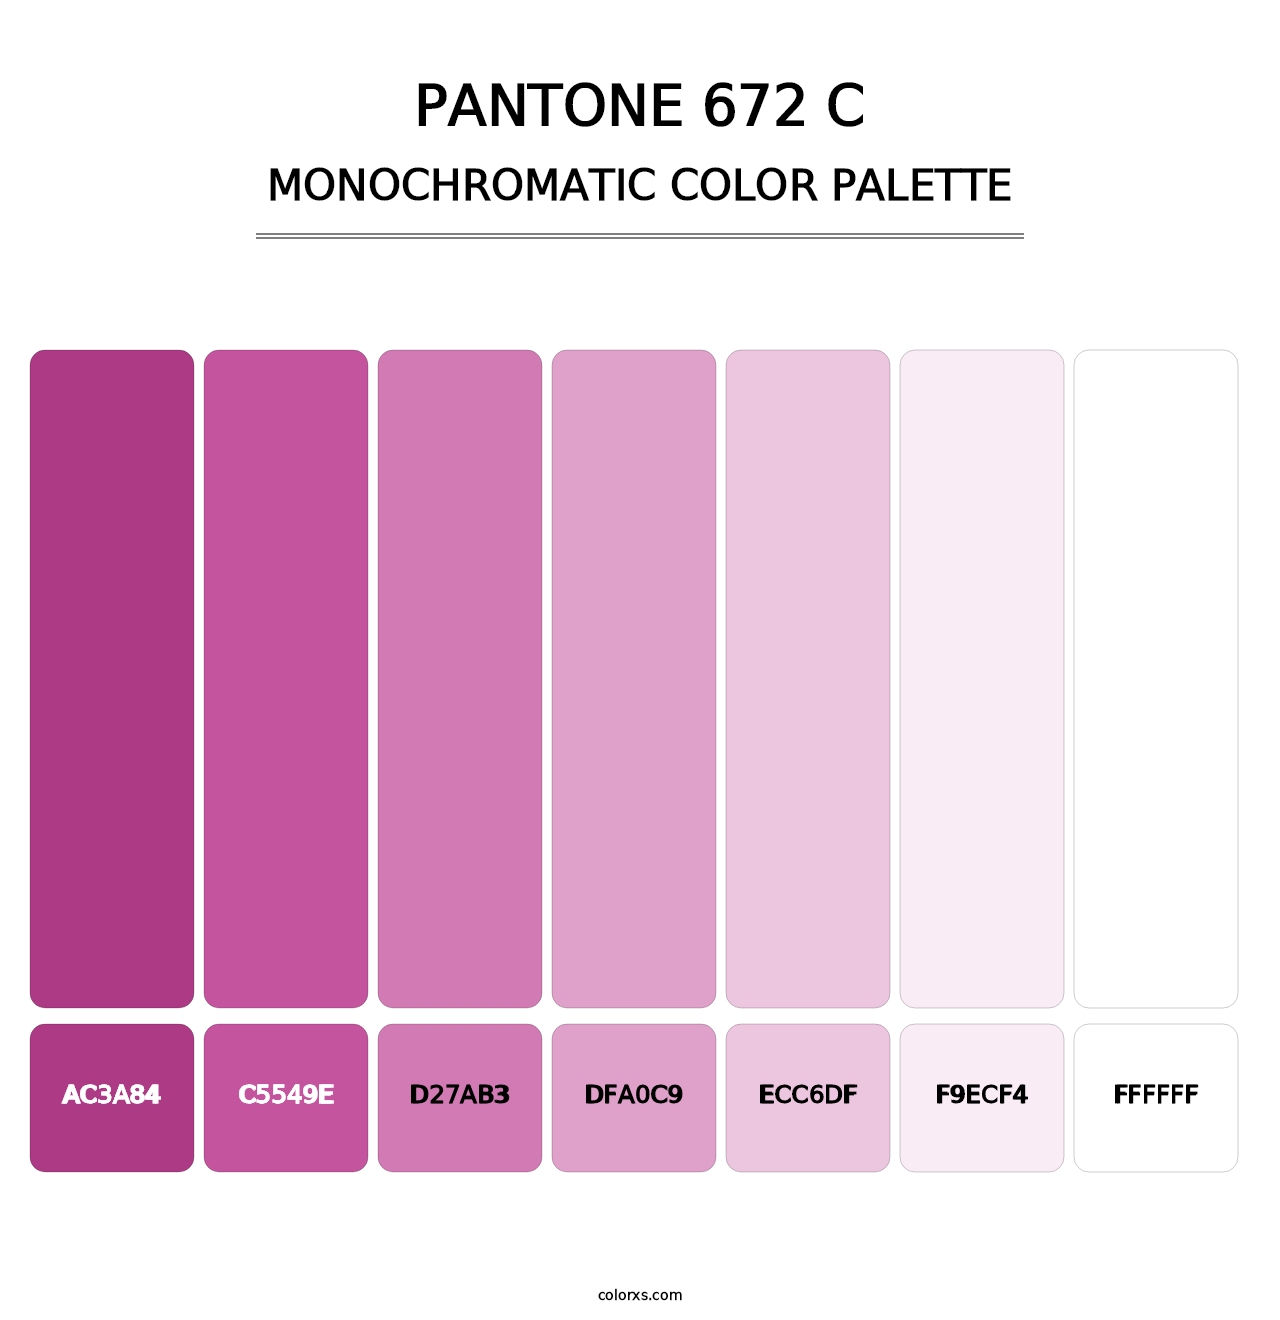 PANTONE 672 C - Monochromatic Color Palette